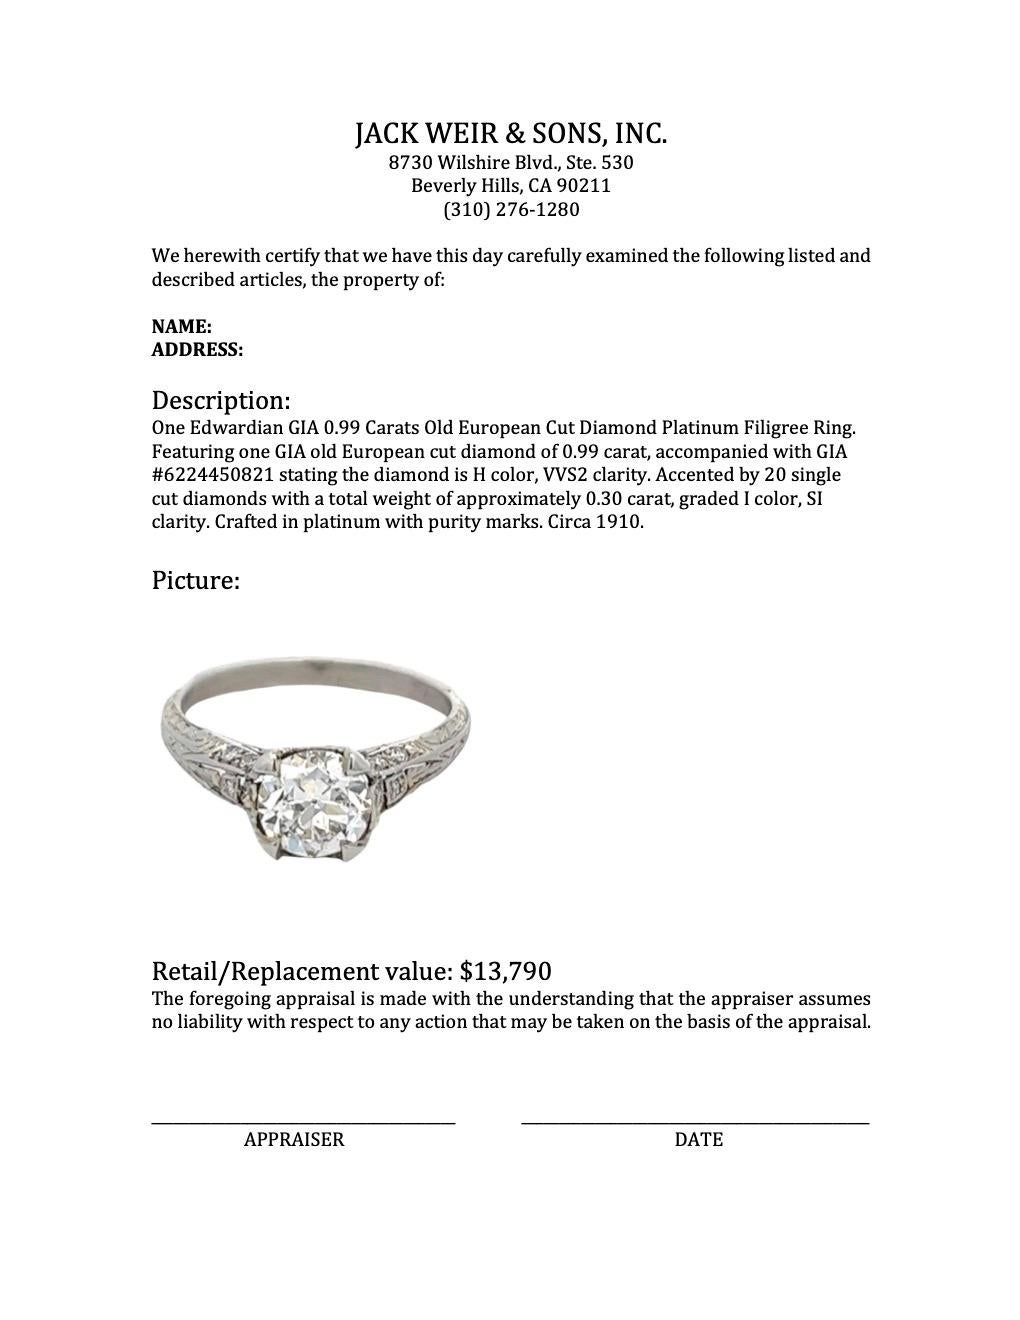 Edwardian GIA 0.99 Carats Old European Cut Diamond Platinum Filigree Ring 4